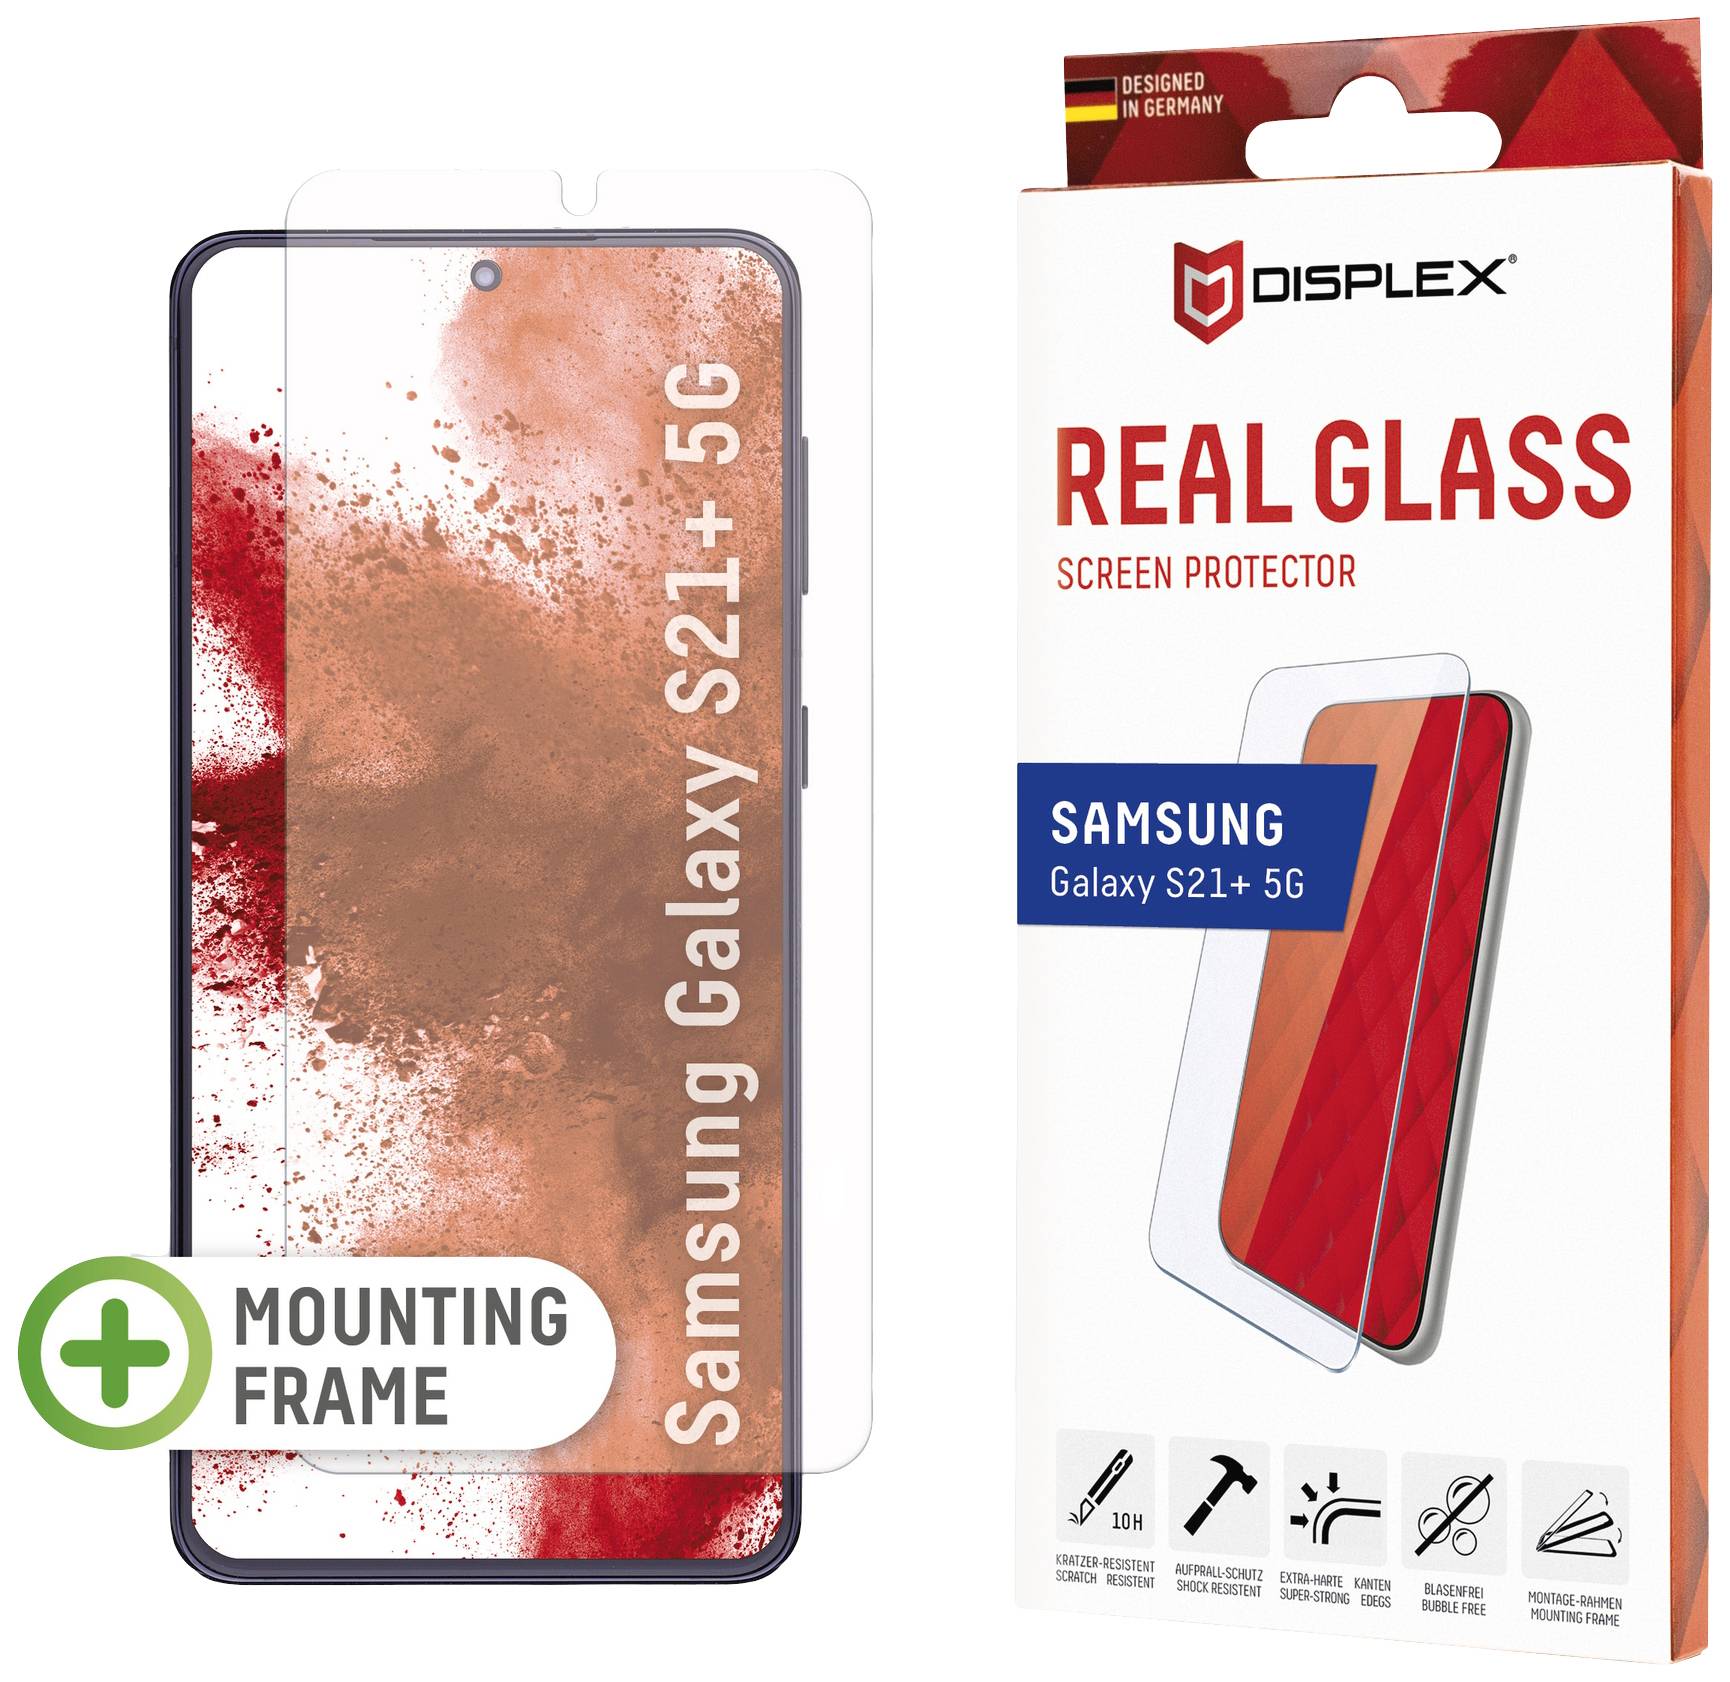 E.V.I. GMBH DISPLEX Real Glass Samsung S21+